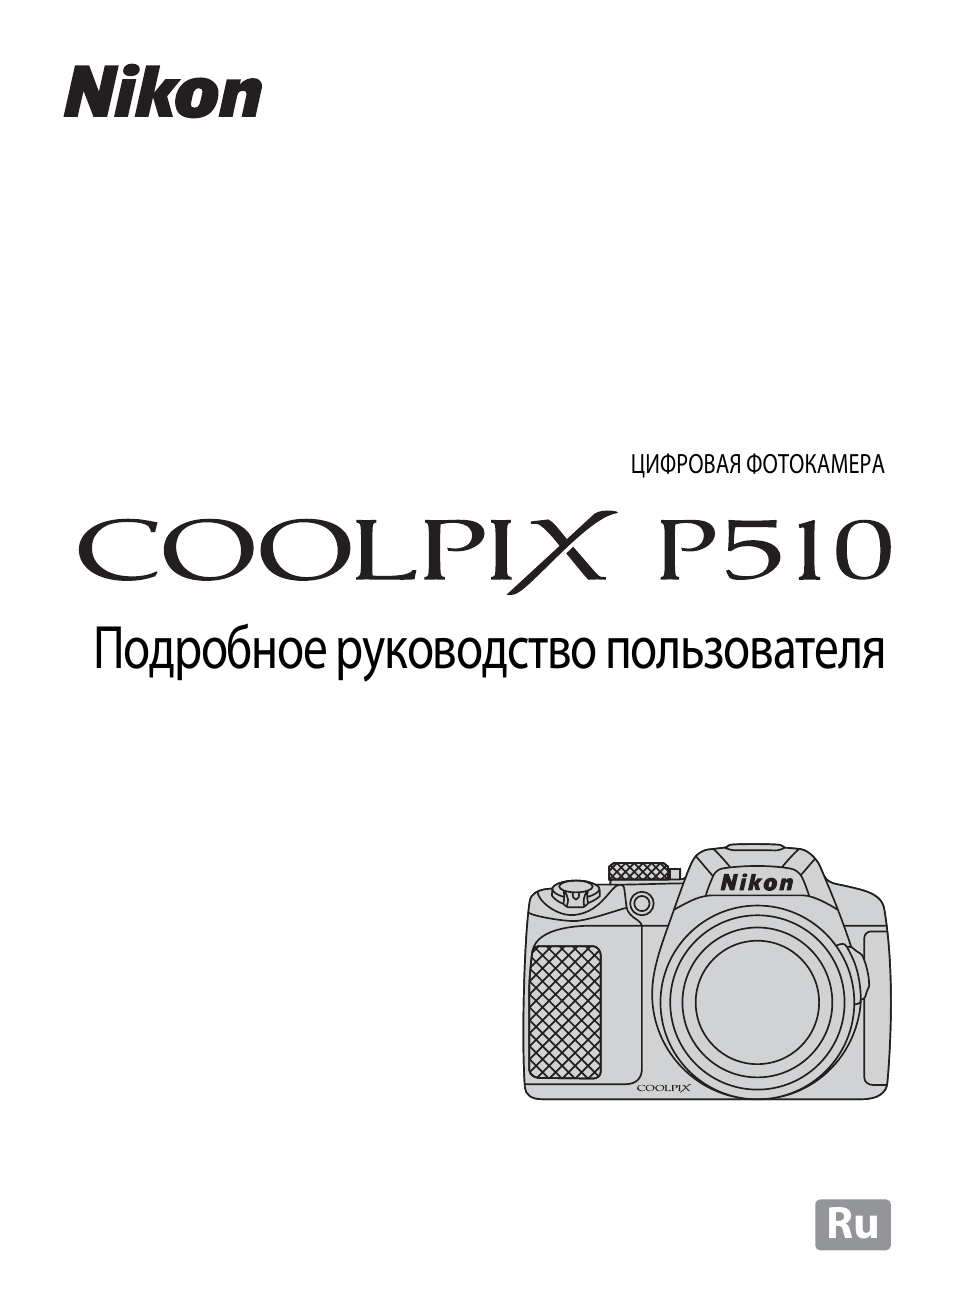 инструкция по эксплуатации nikon coolpix p510